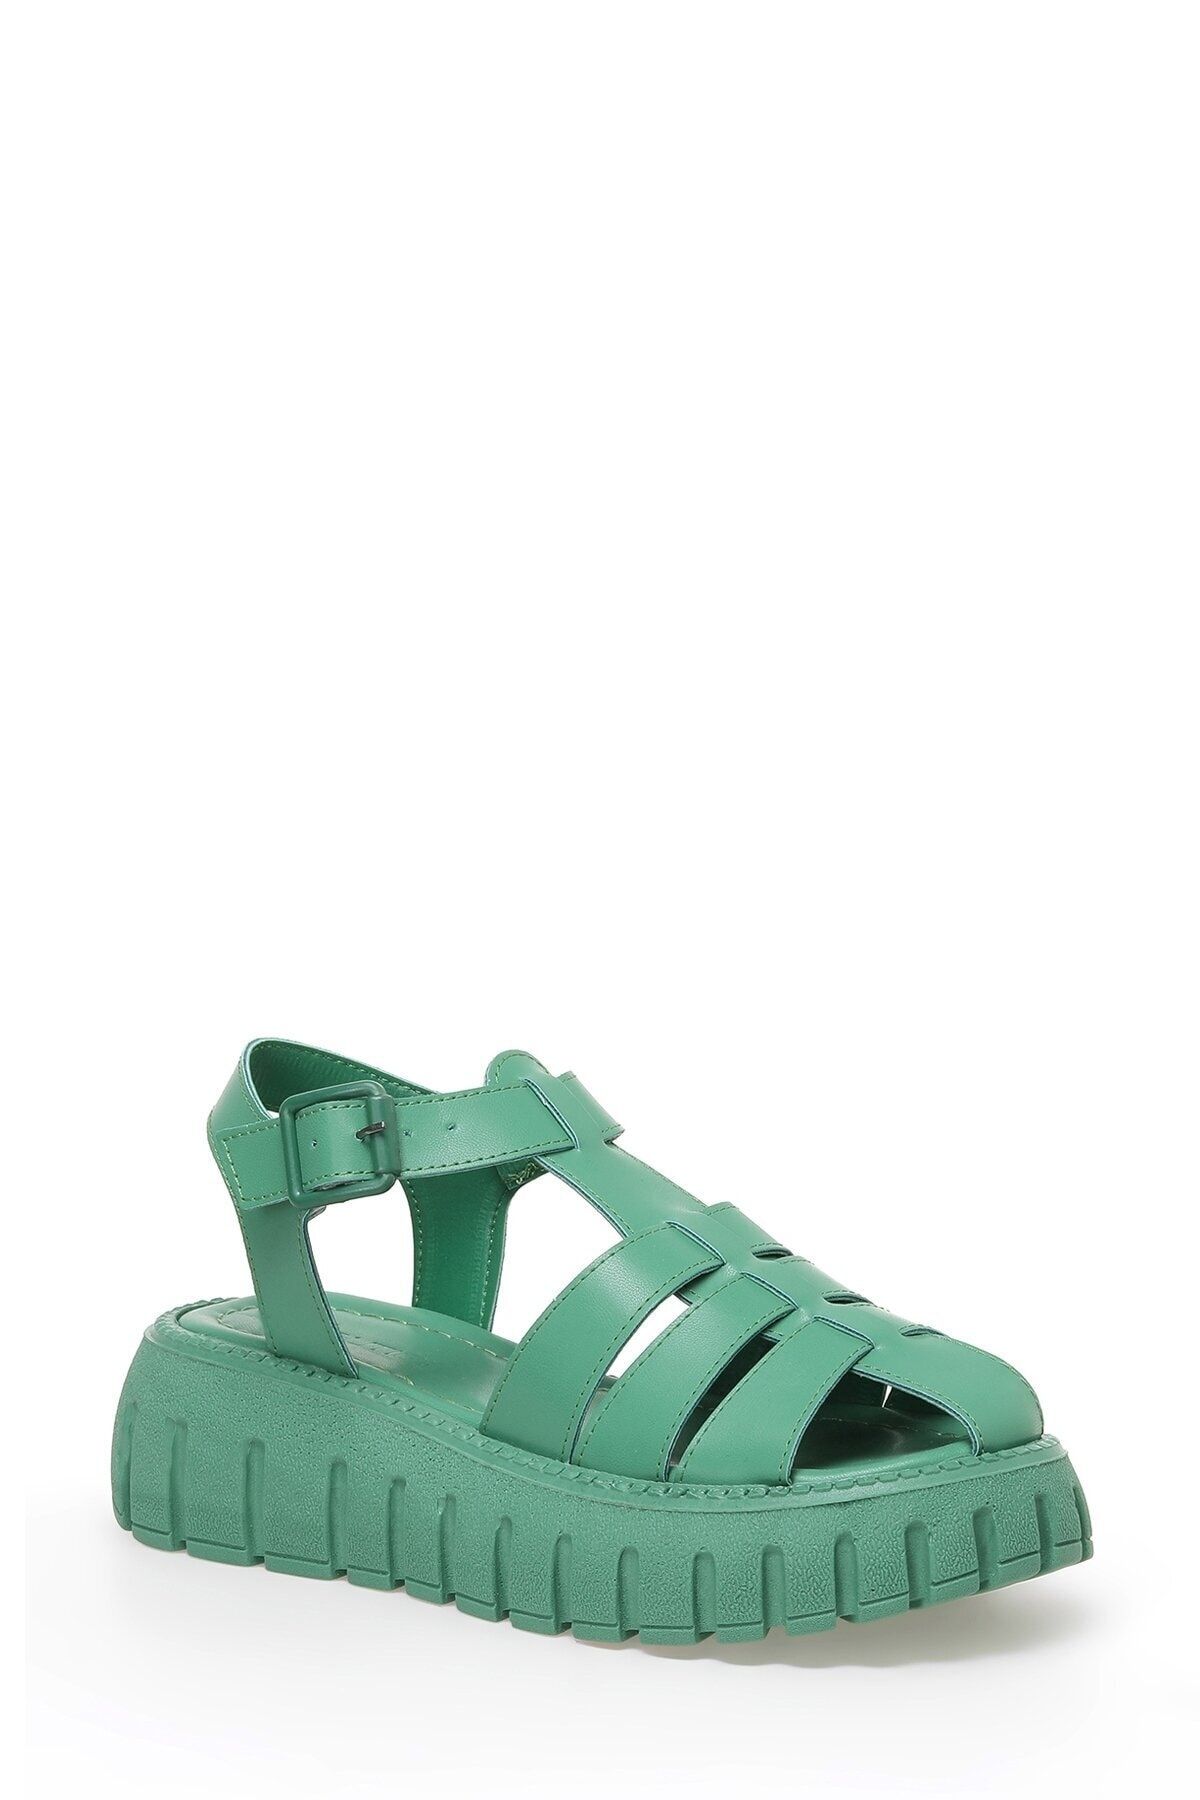 Butigo 3FX Yeşil Kadın Kalın Taban Sandalet